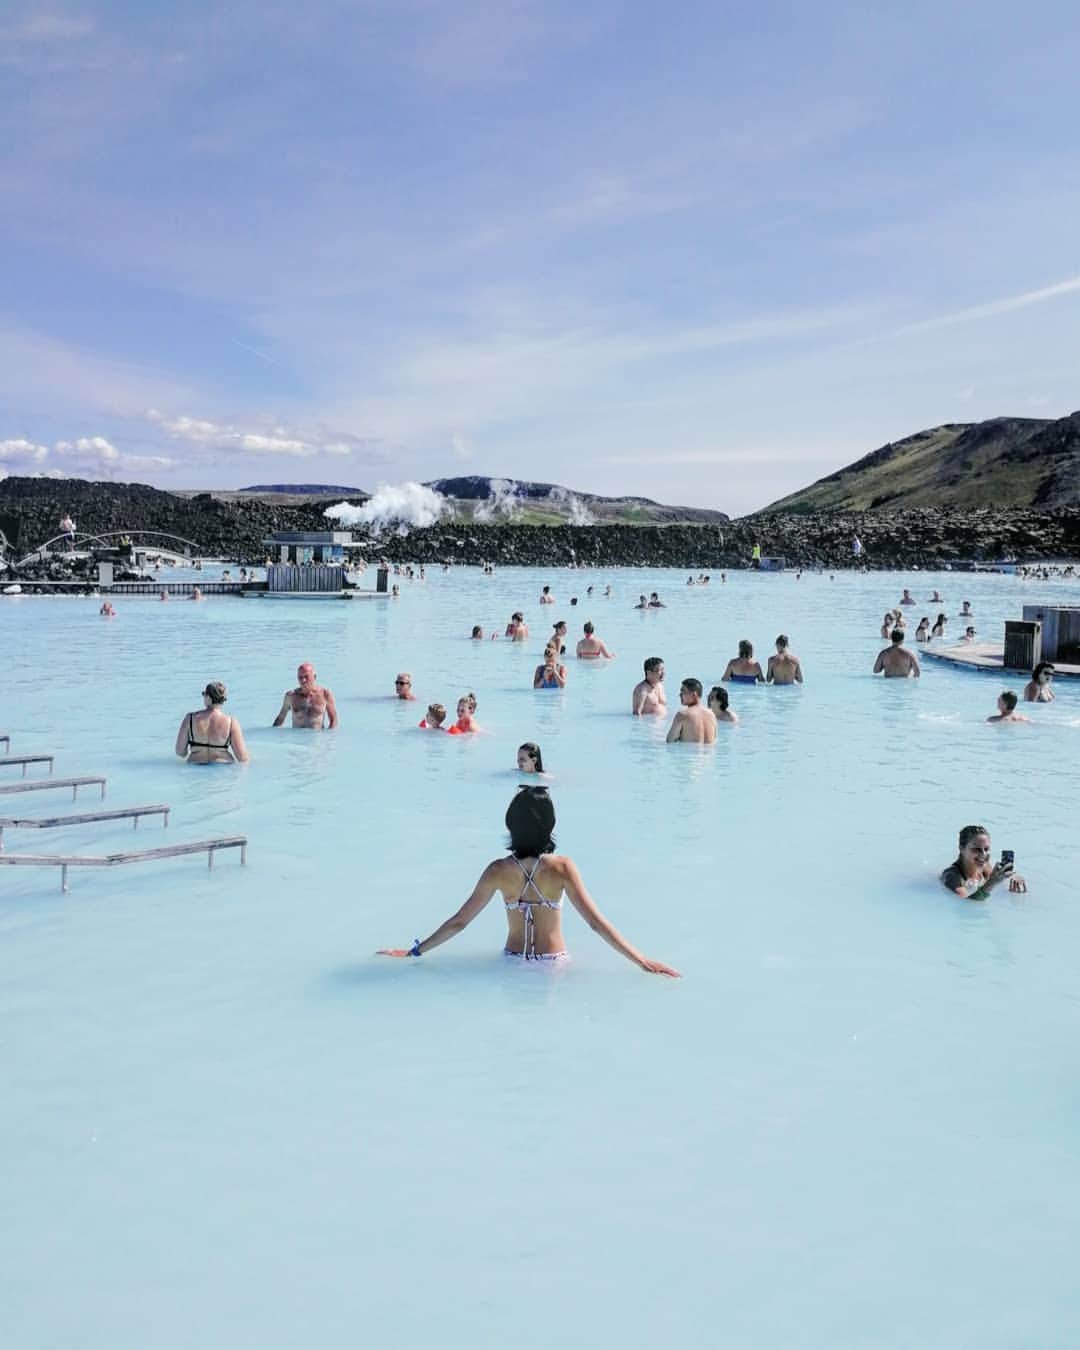 桐島瑞希さんのインスタグラム写真 桐島瑞希instagram ブルーラグーン神秘的 Bluelagoon ブルーラグーン アイスランド アイスランド旅行 Iceland Hotsprings 温泉 温泉旅行 温泉 海外旅行 海外旅行好きな人と繋がりたい Travelphotography 旅し